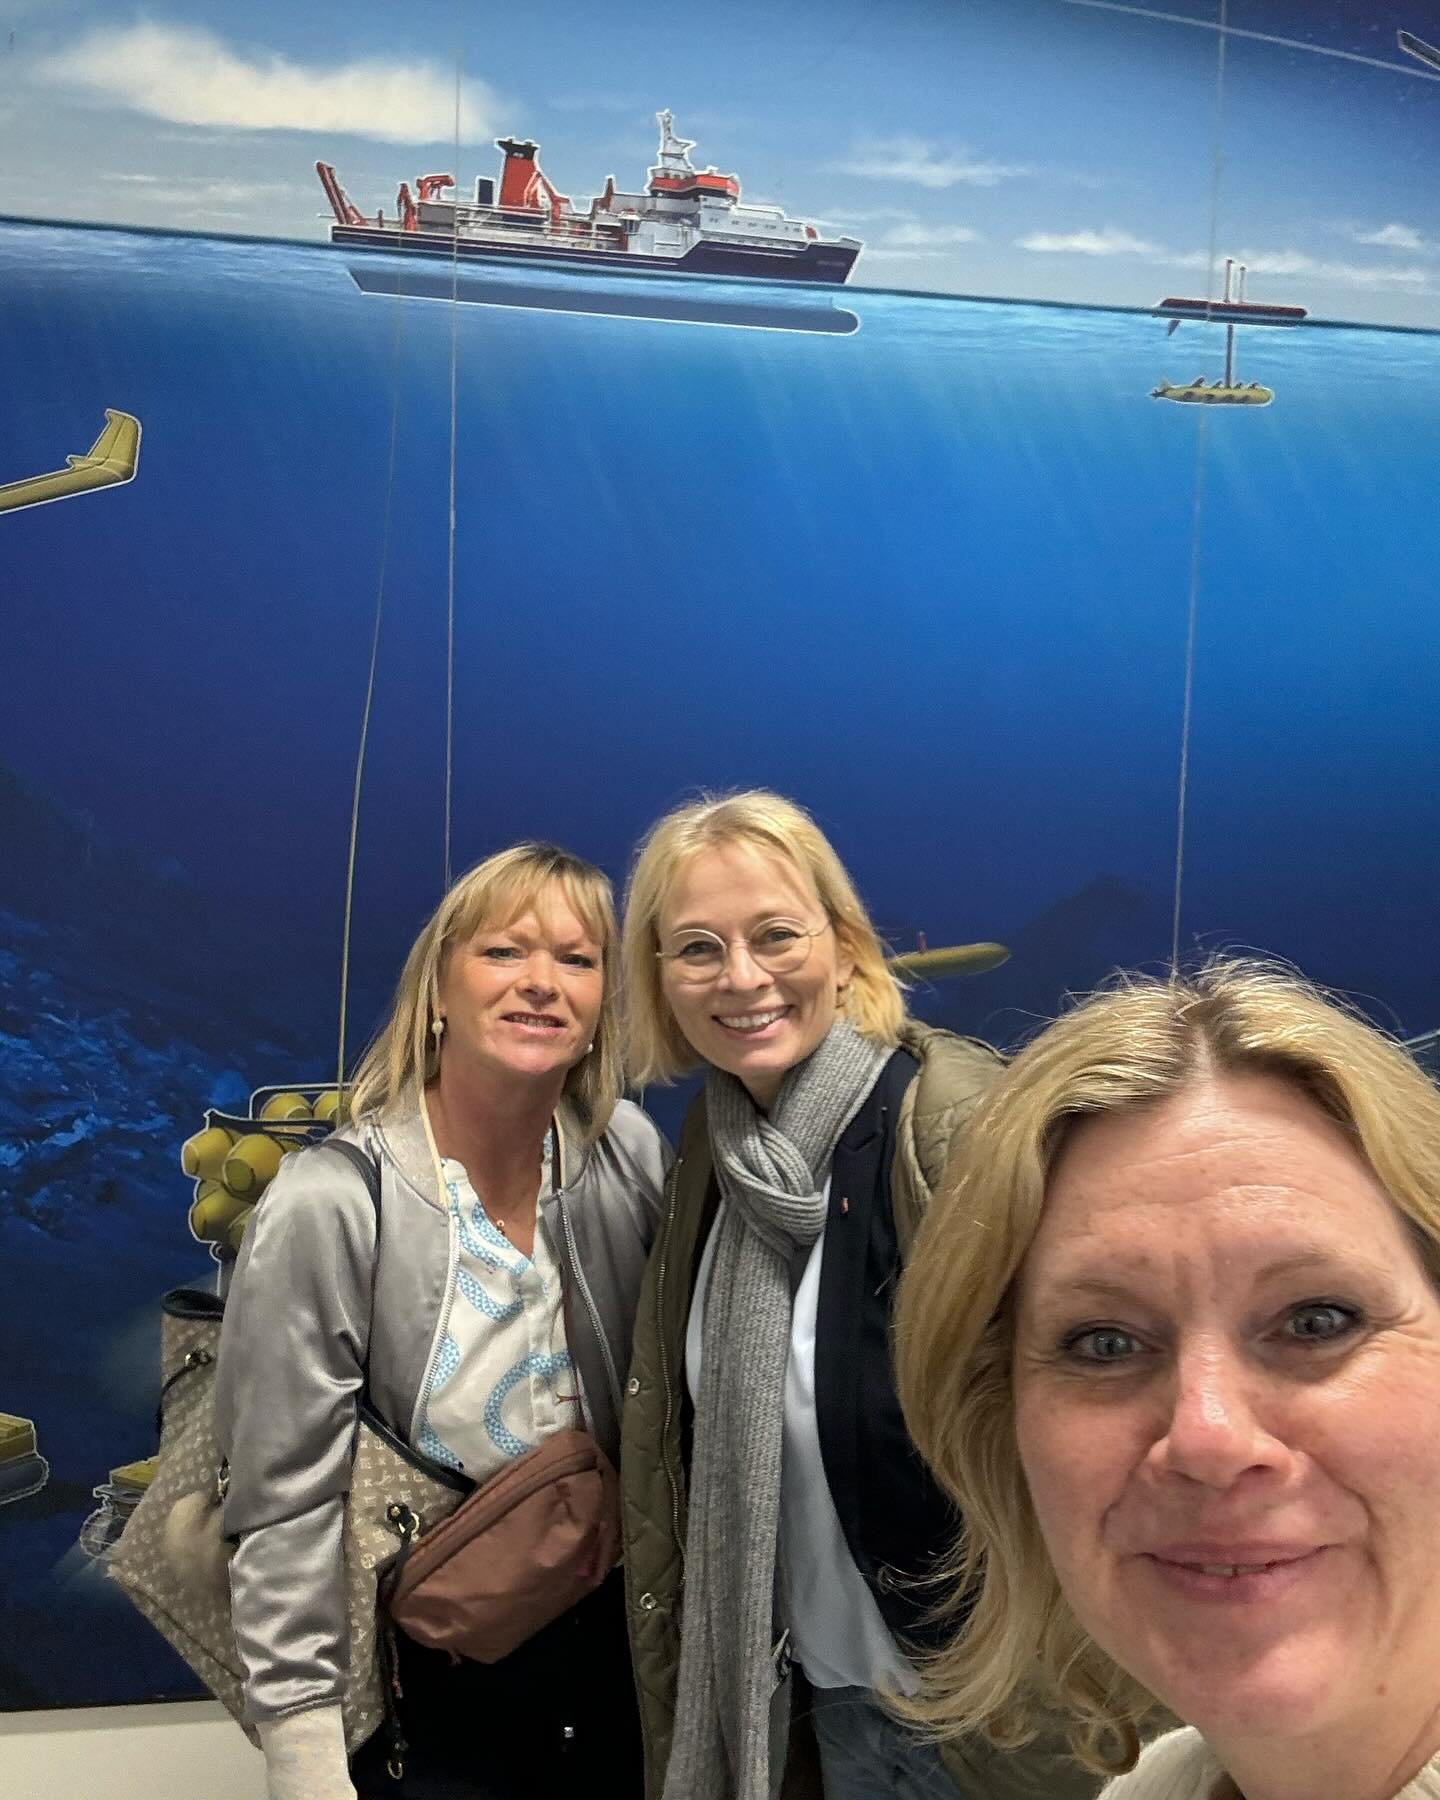 Super spannender Besuch bei GEOMAR-Helmholtz-Zentrum f&uuml;r Ozeanforschung in Kiel. 

Mit meinen beiden Kolleginnen @dunjakreiser und @peggy.ist.da sowie meinem Kollegen @kristian_klinck_spd tauchte ich ein in die Welt der Ozeane. 

Das GEOMAR betr